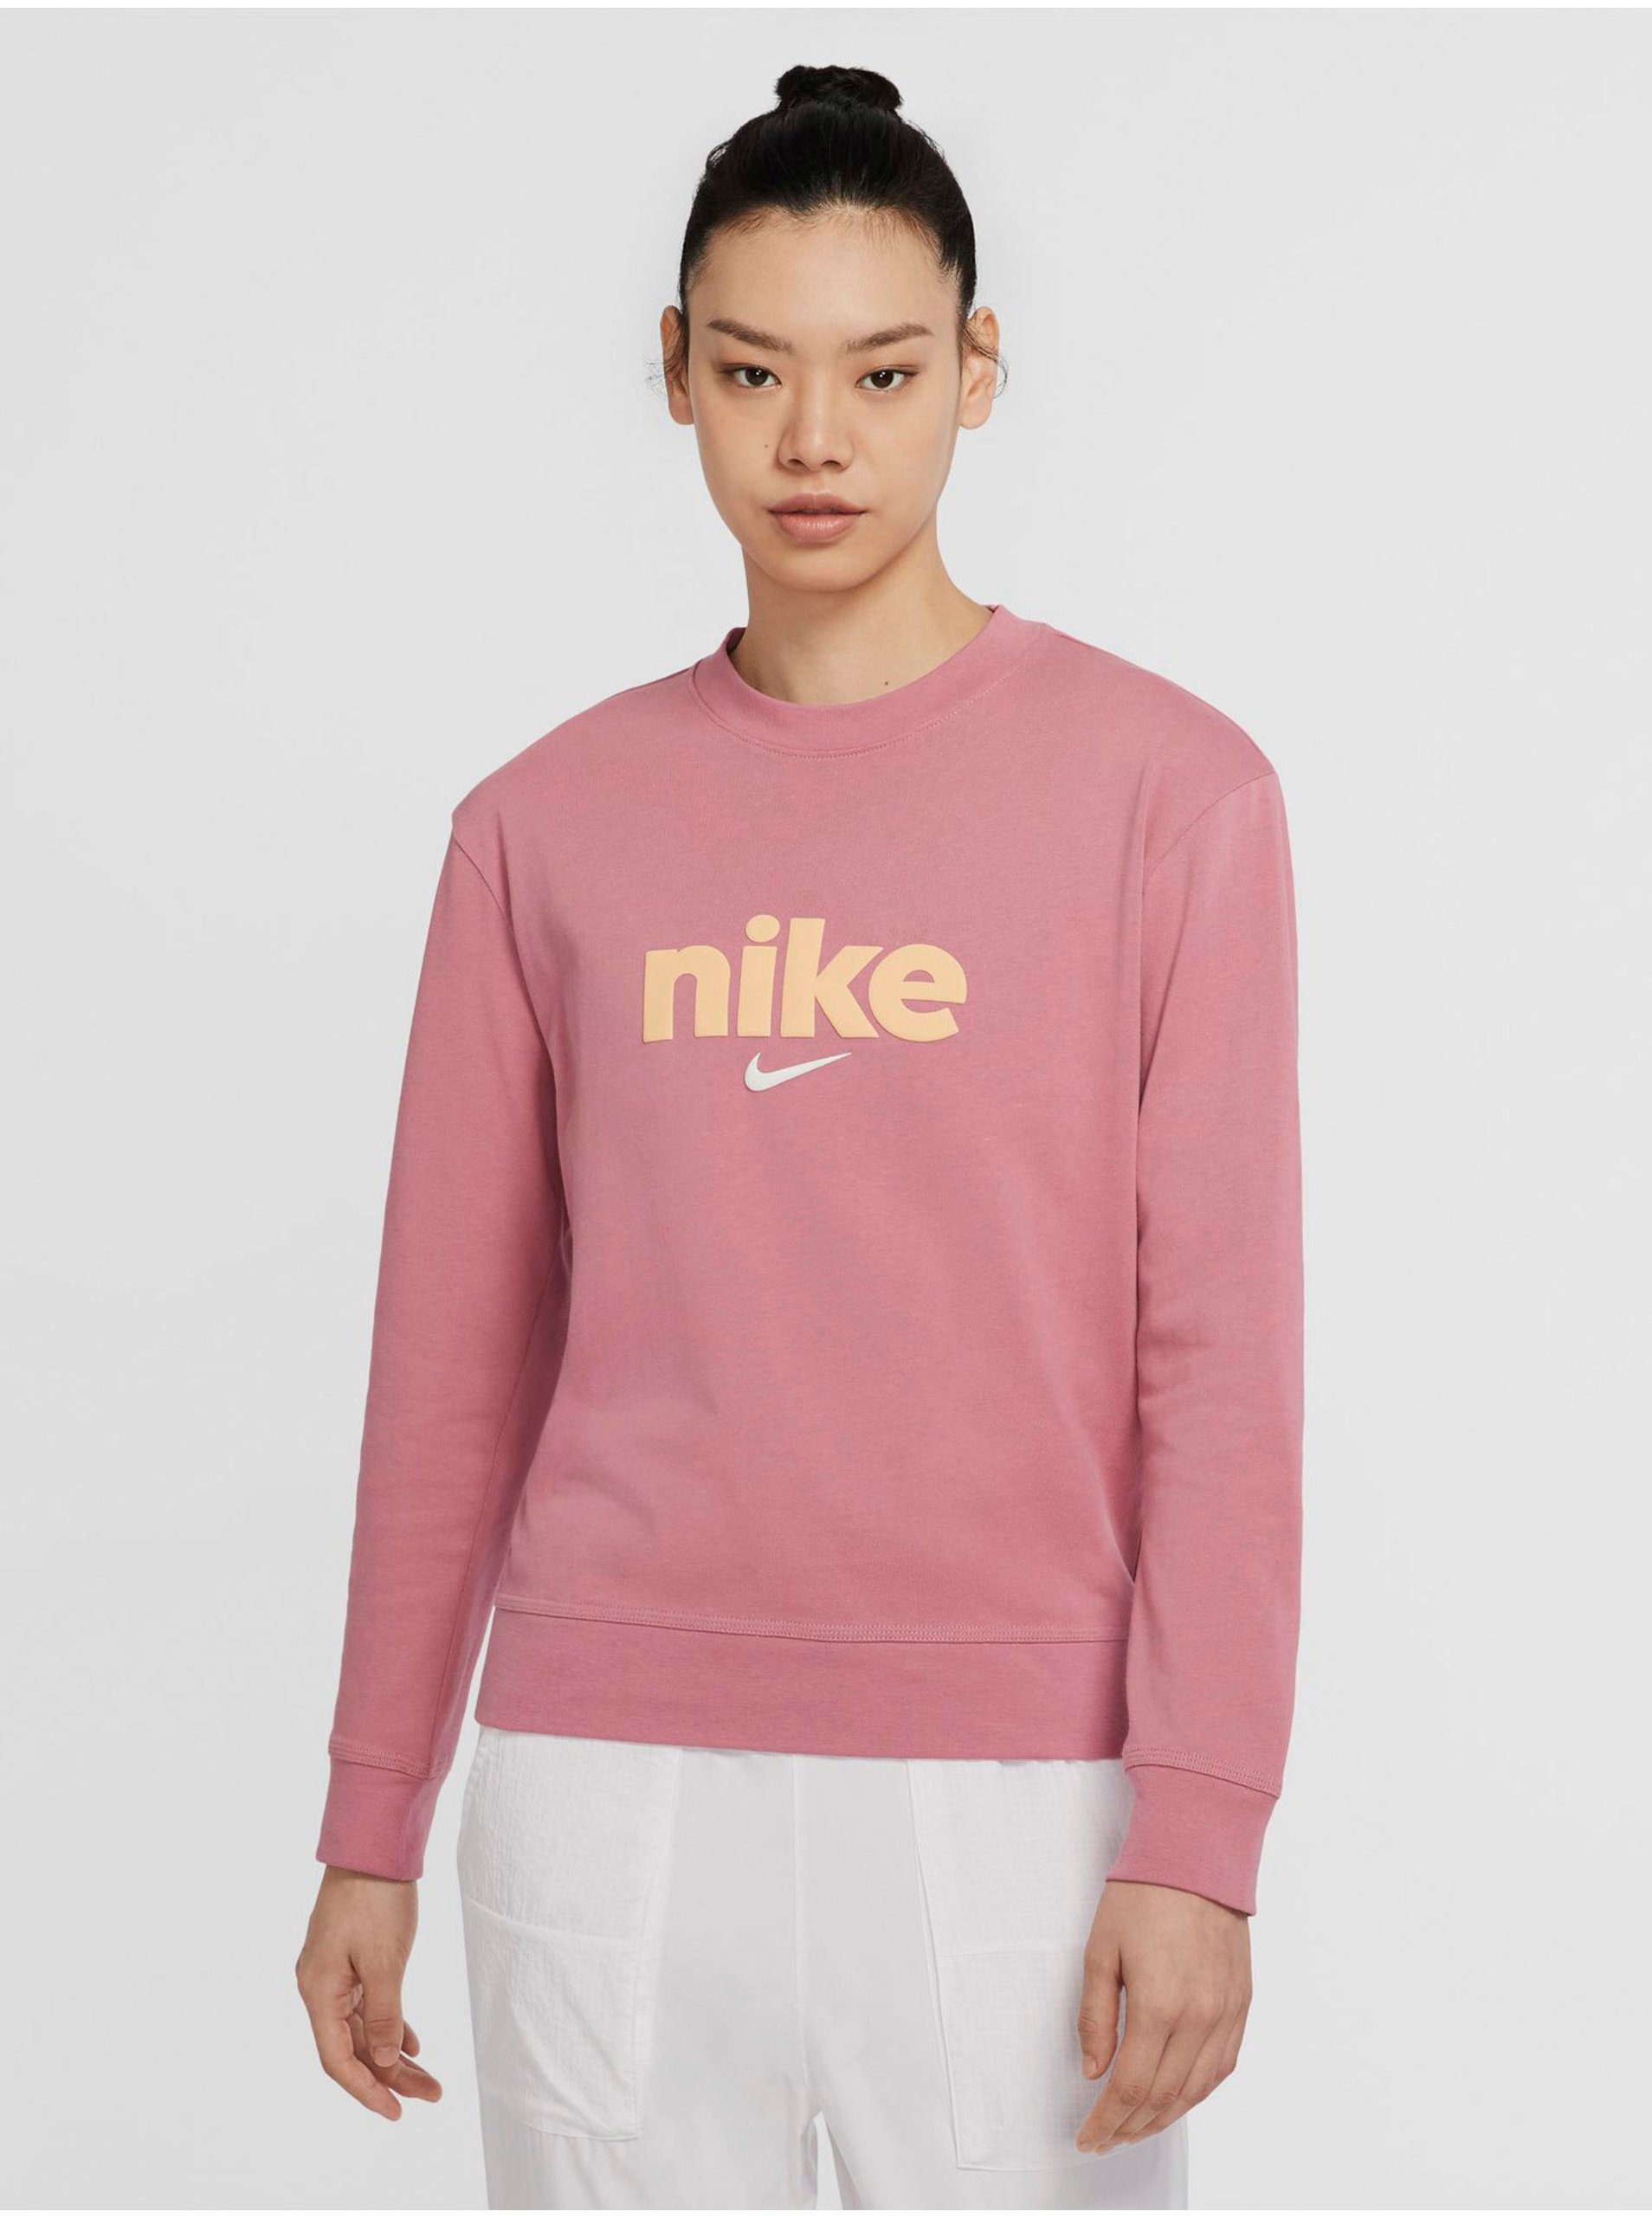 Lacno Mikiny pre ženy Nike - ružová